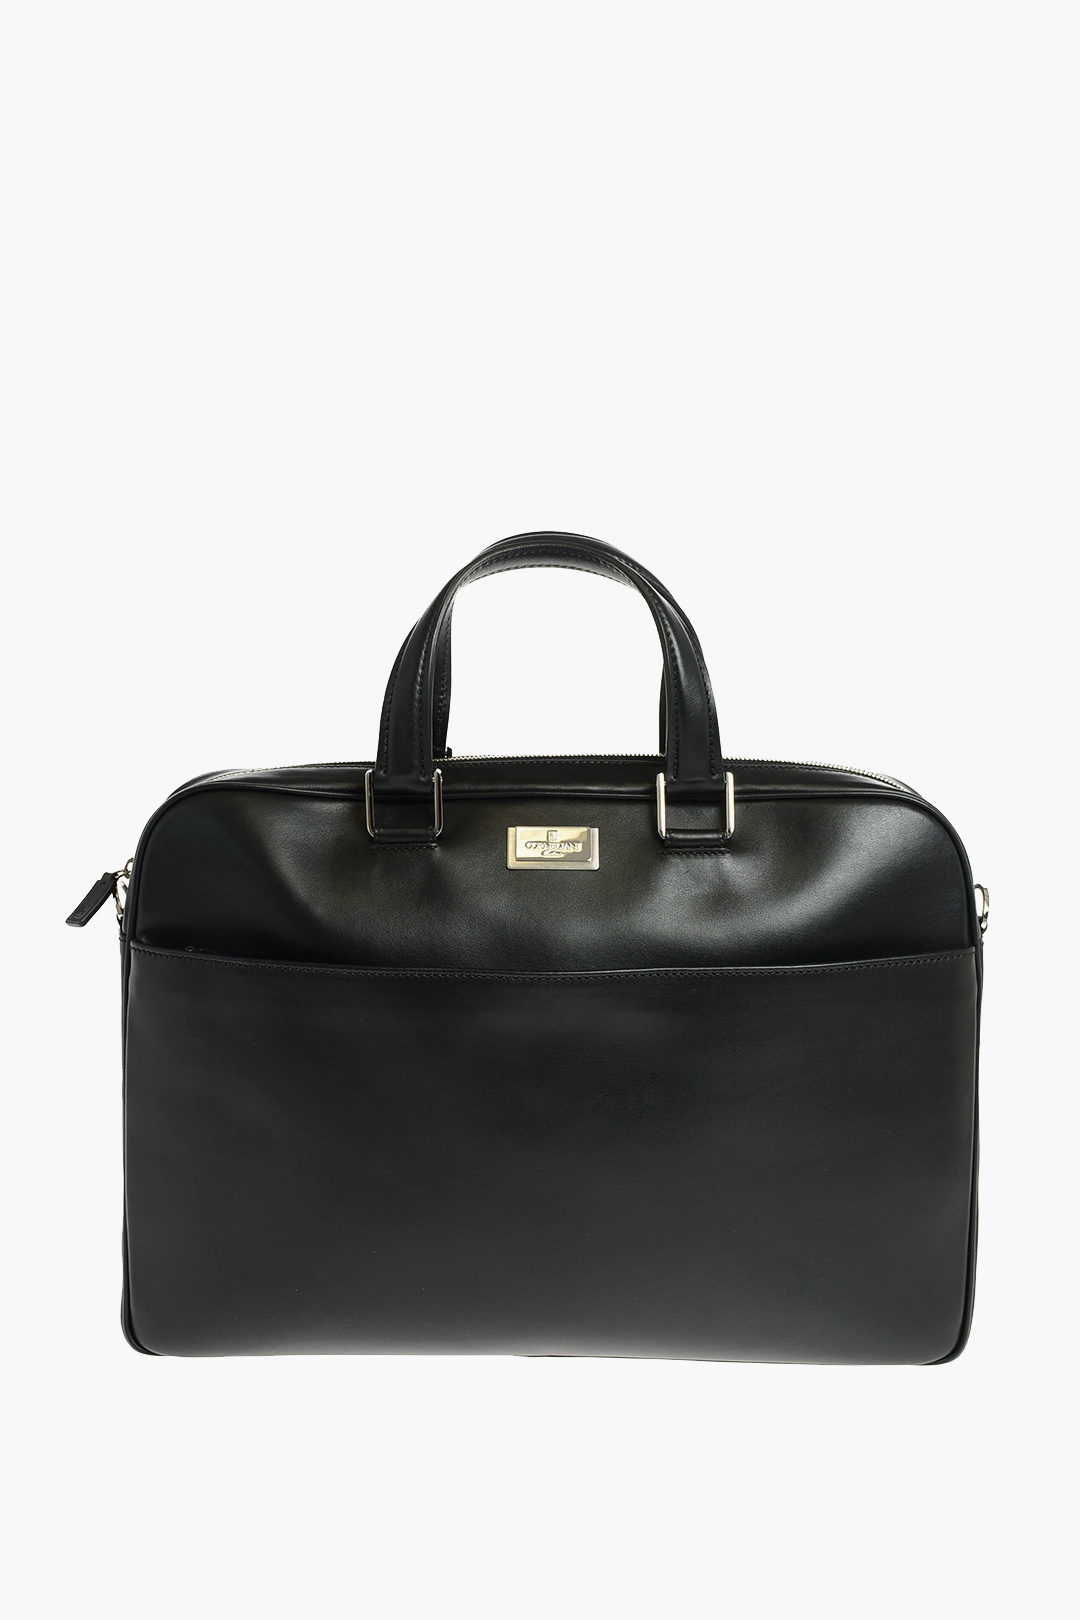 Corneliani Leather Business Bag with Flexible Handles and Zip men ...